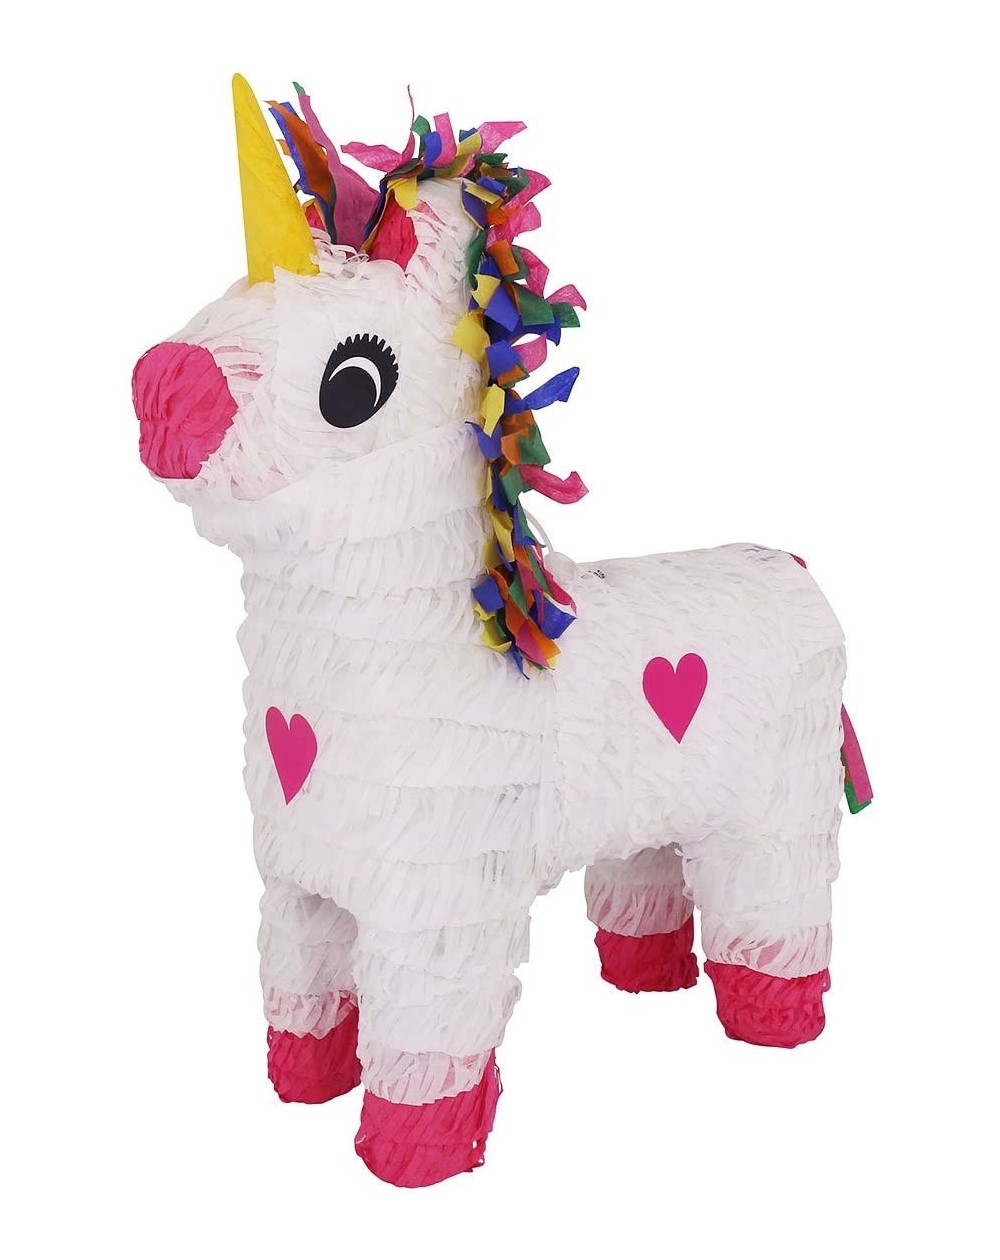 Piñatas White Unicorn Pinata w/Colorful Mane for Girls Pink Hearts and Yellow Horn (Piñata de Unicornio) Party Game- Birthday...